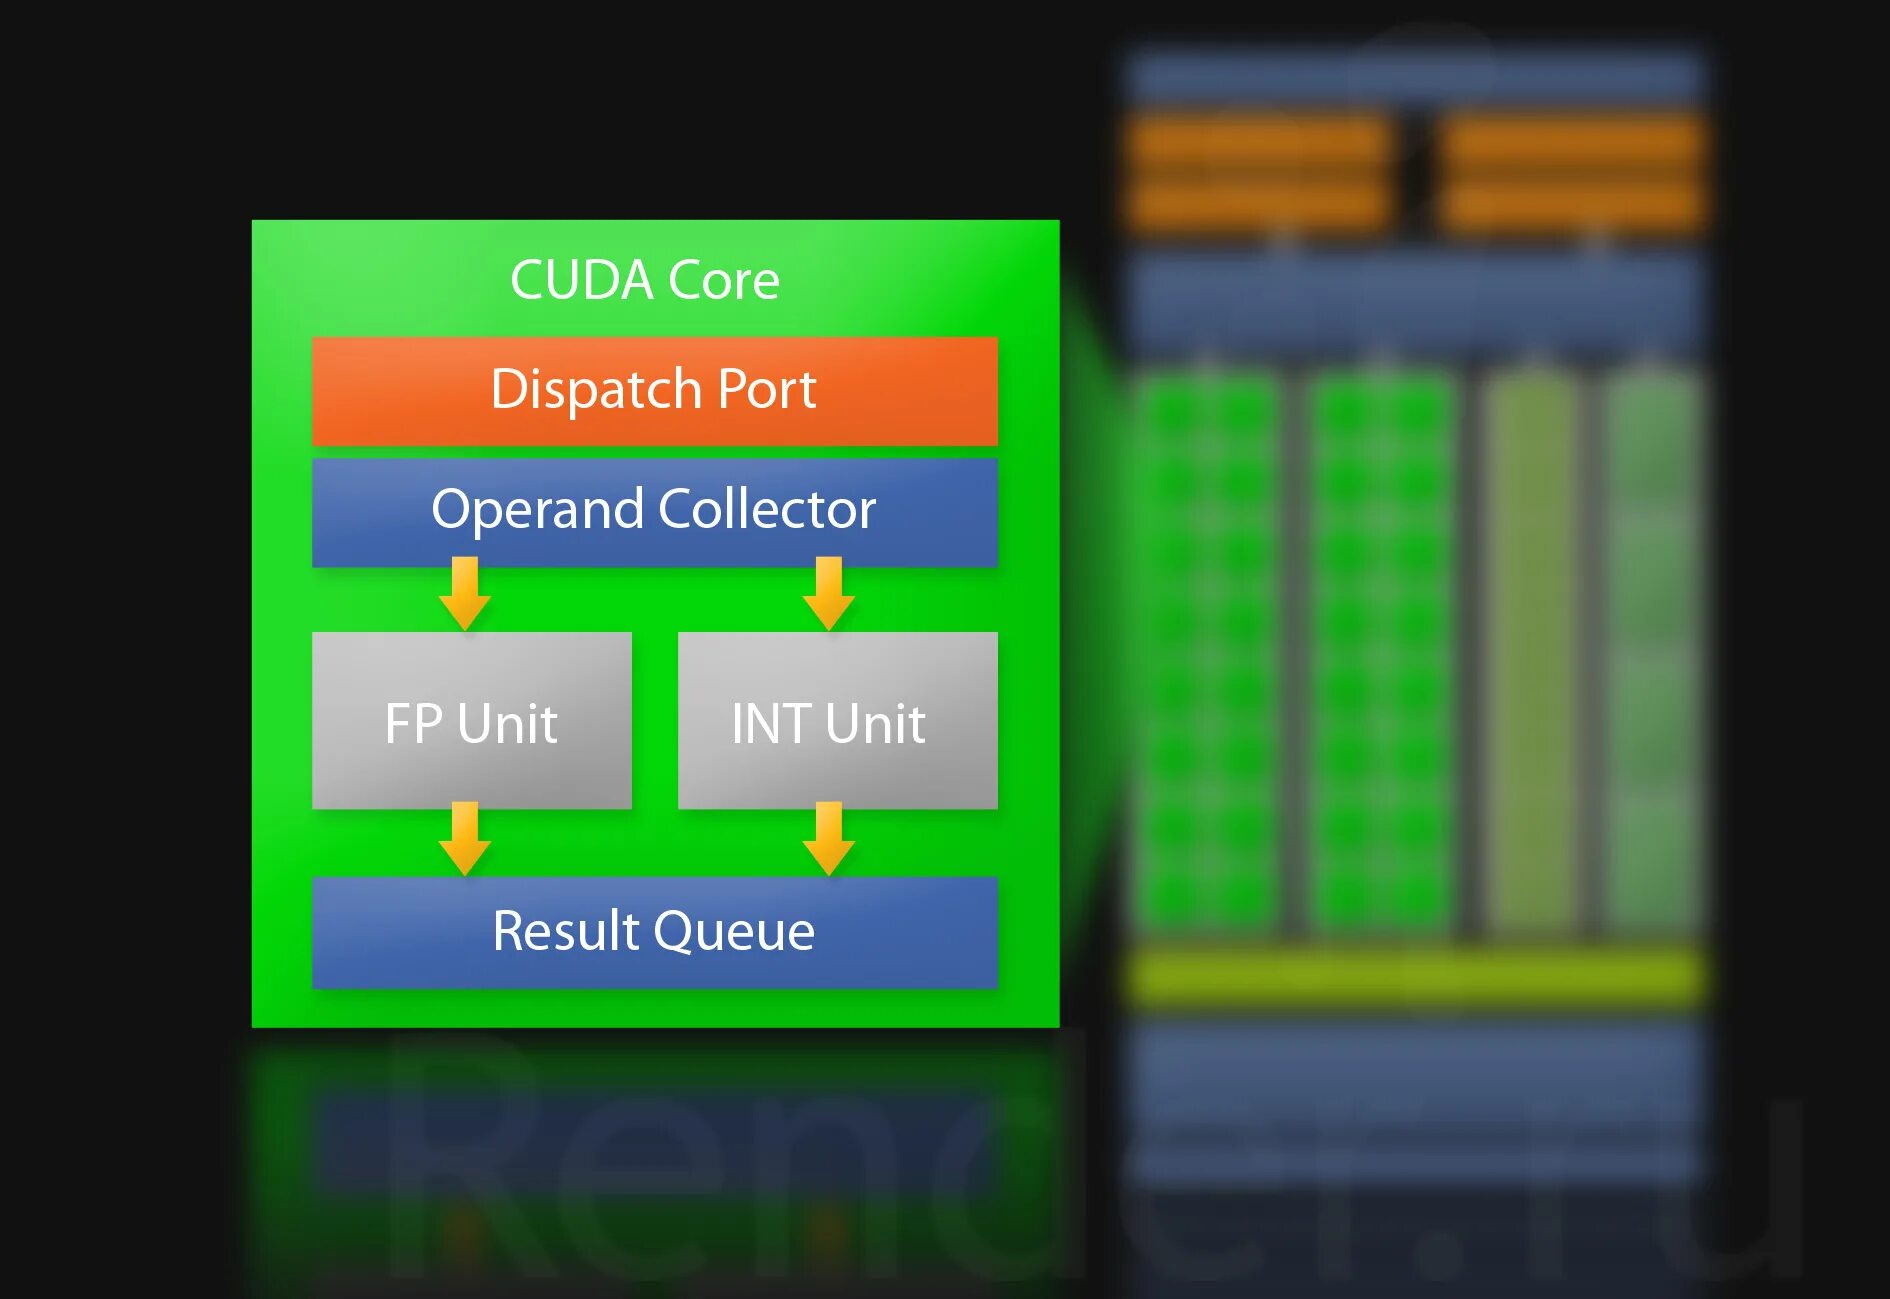 CUDA ядра. CUDA графические процессоры что это. CUDA ядра в видеокартах. CUDA ядра график. Cuda kernel